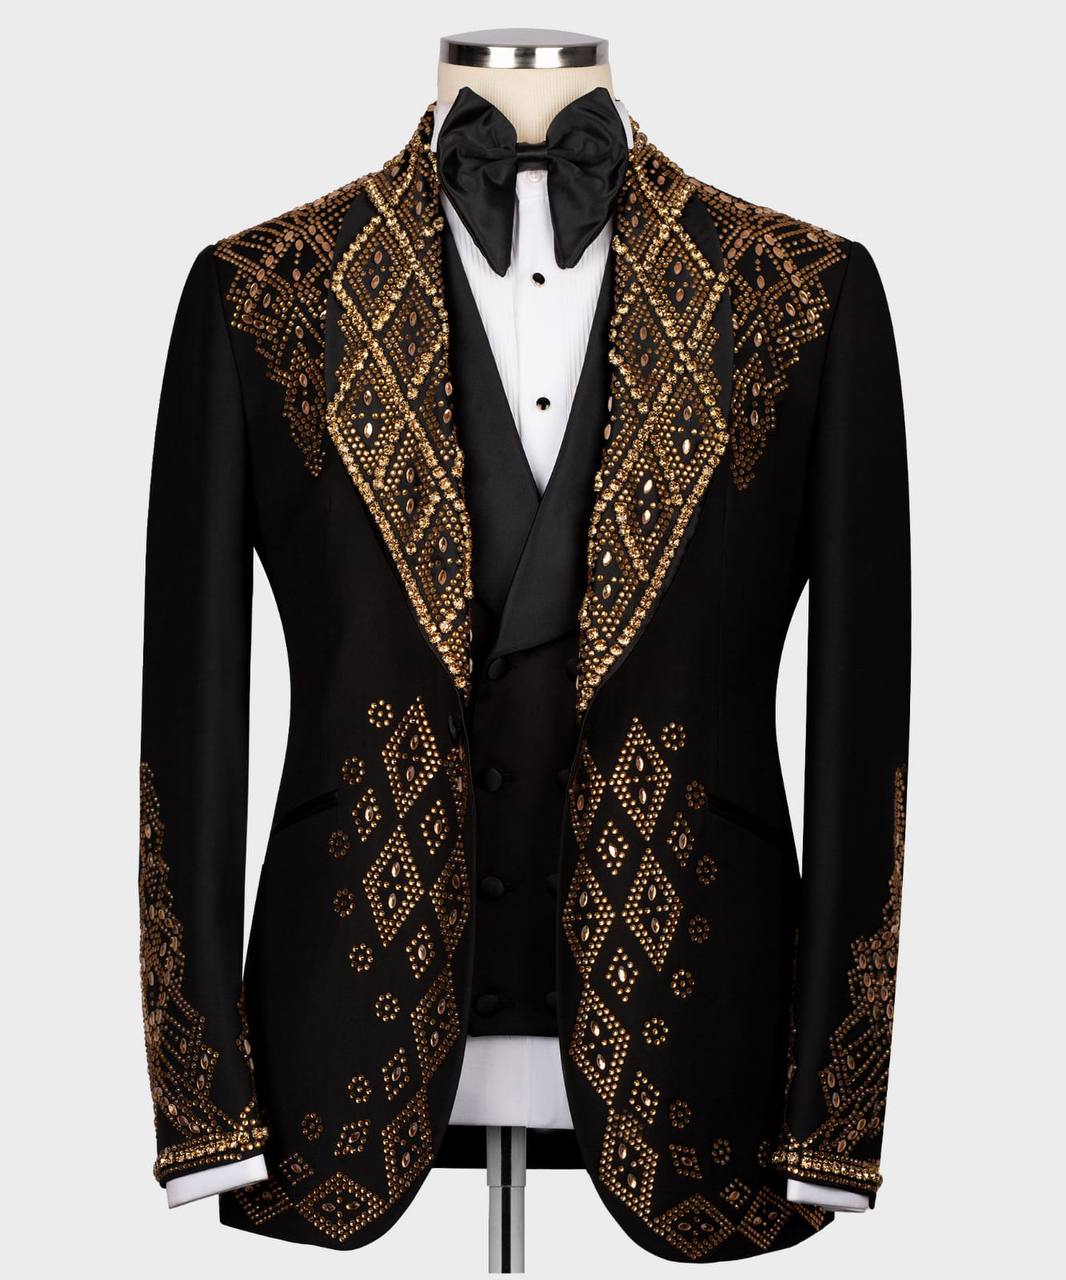 Men's Black Tuxedo, Gold Gem Stoned Design